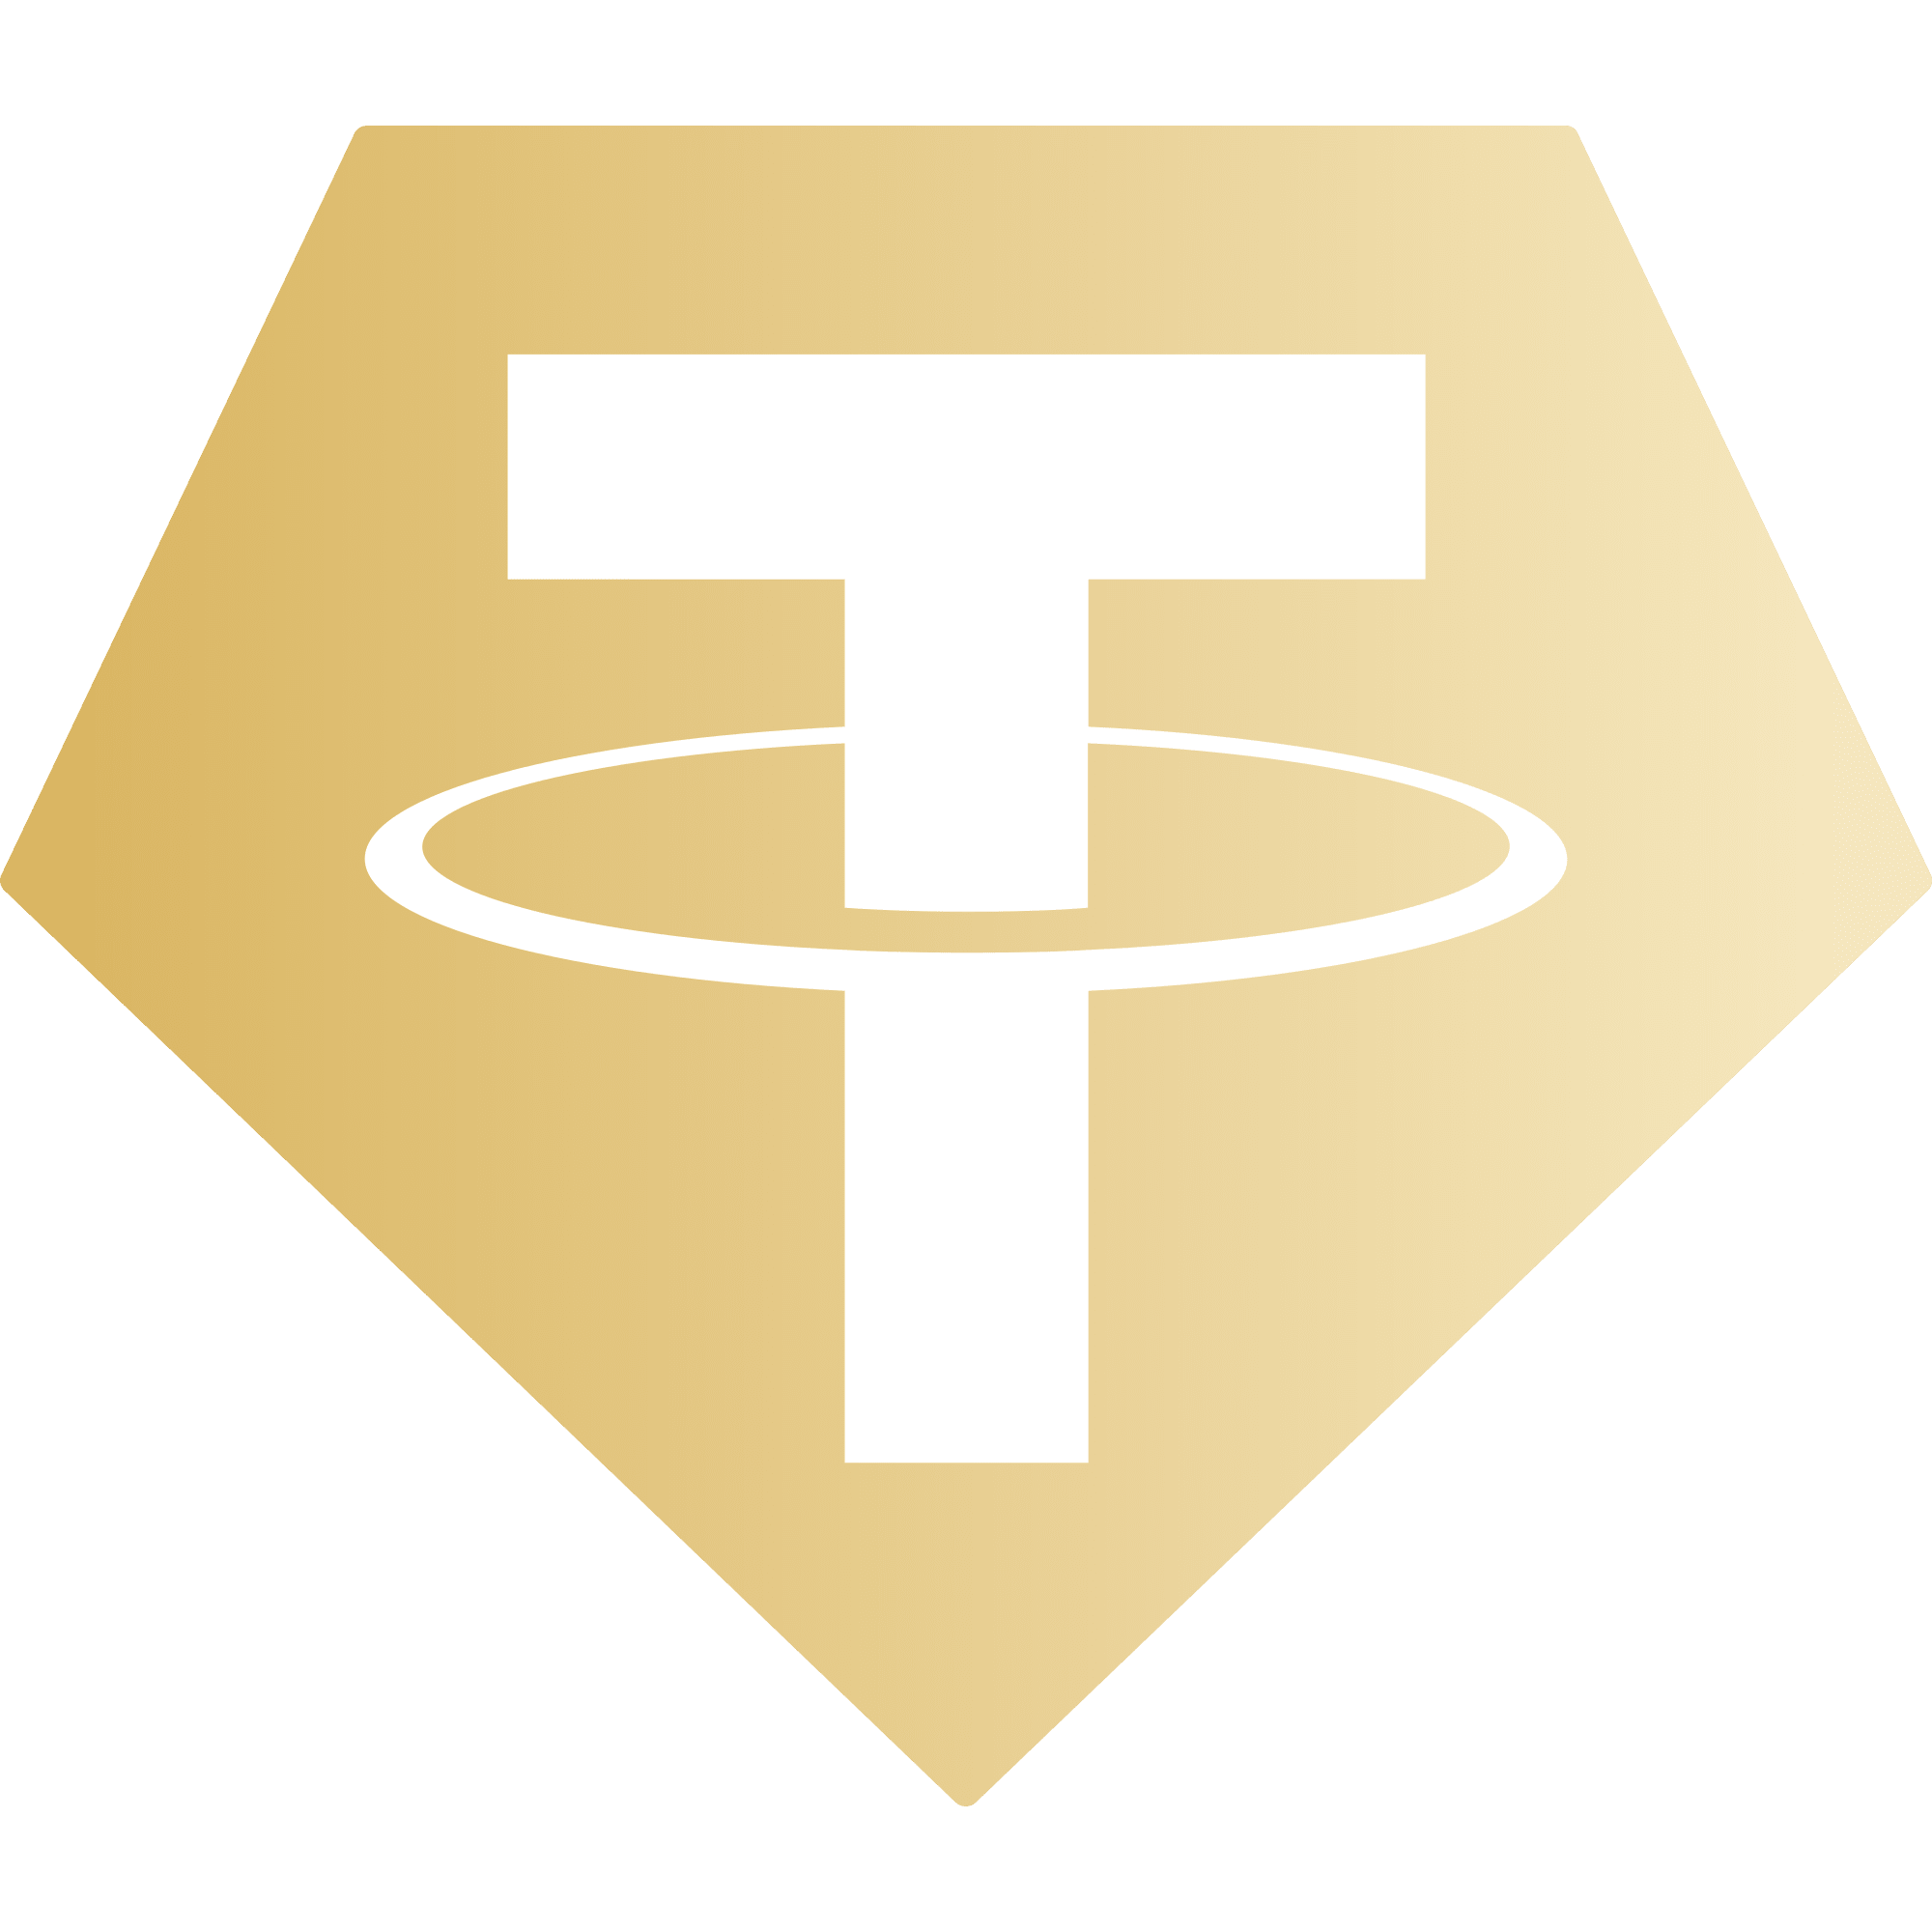 Tether Gold (XAUT) logo